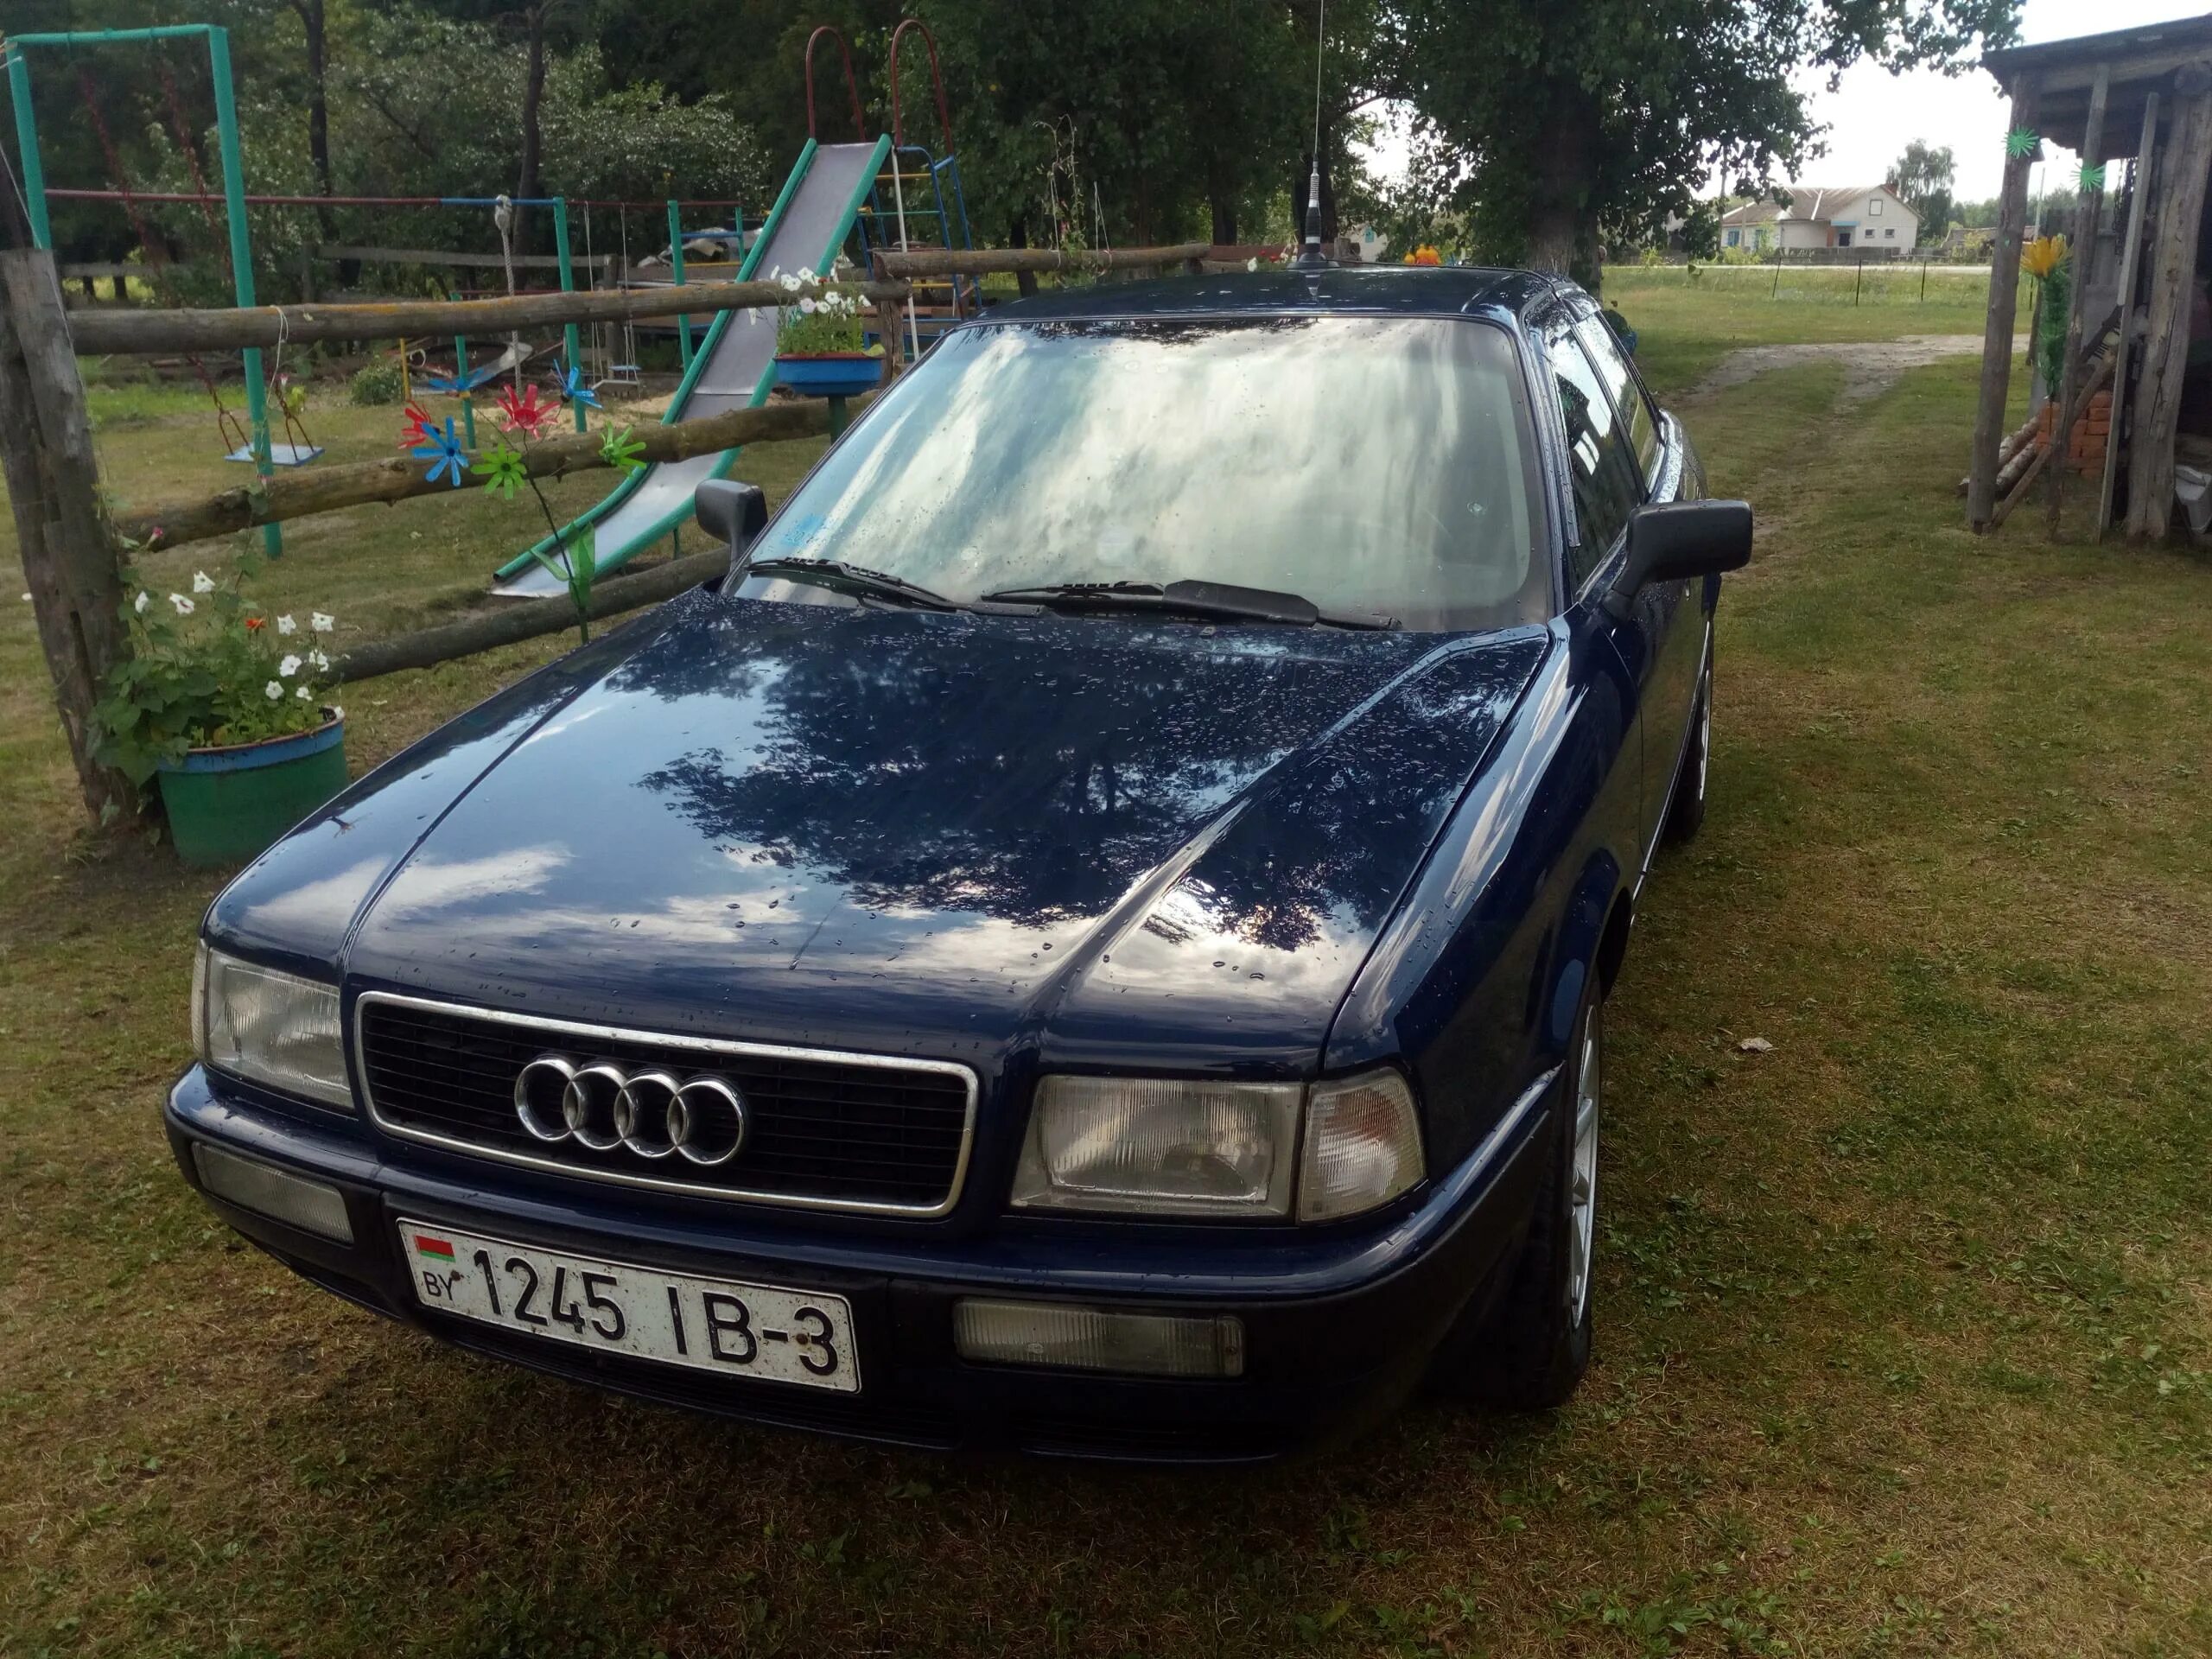 Ауди 80 1992г. Audi 80 1992. Ауди 80беларусь. Купить авто Ауди -80 1997 г пробегом в Беларуси.